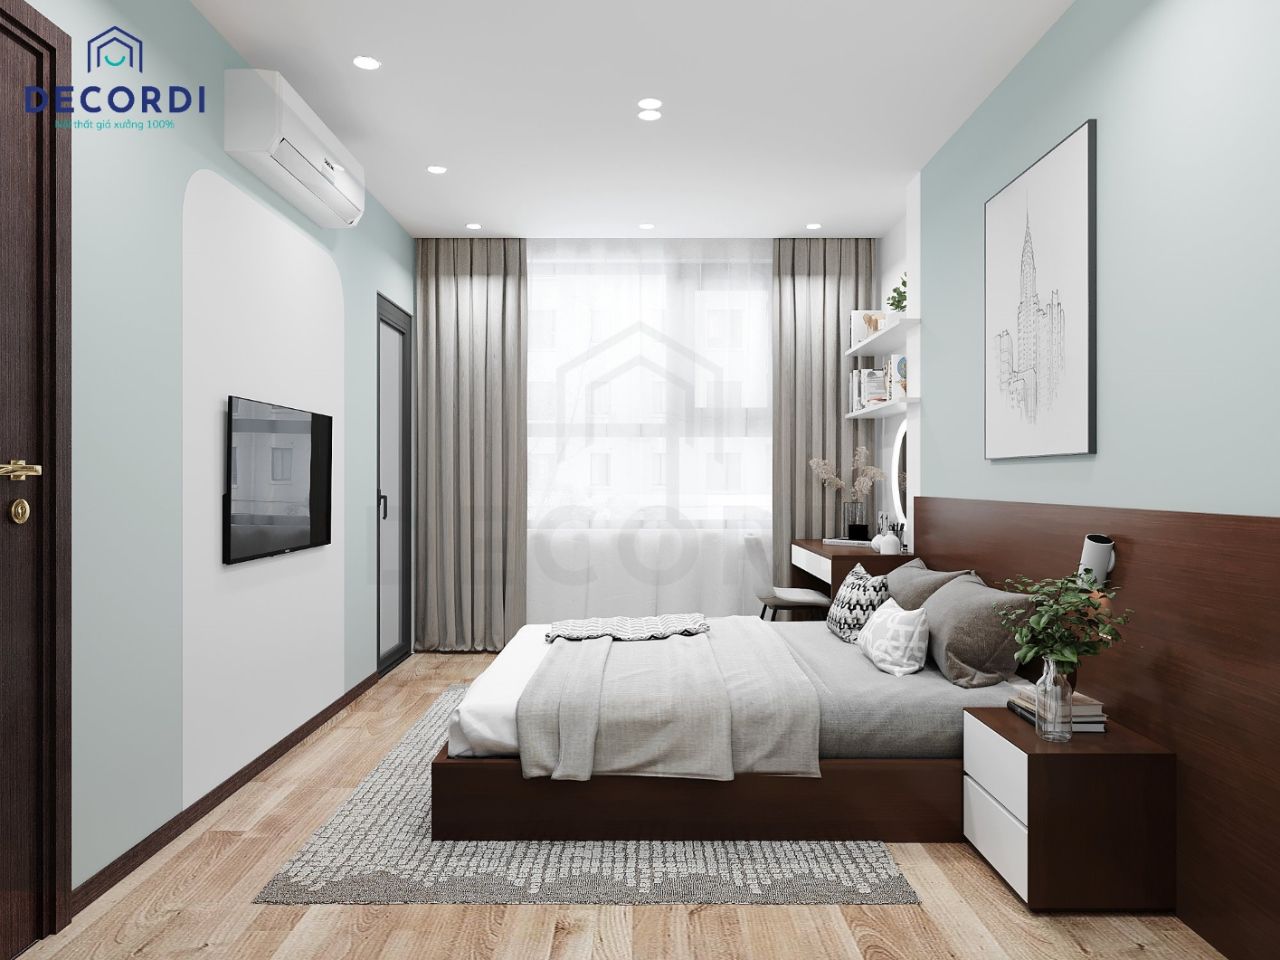 Tối ưu ánh sáng tự nhiên phòng ngủ nhờ hệ thống rèm 2 lớp